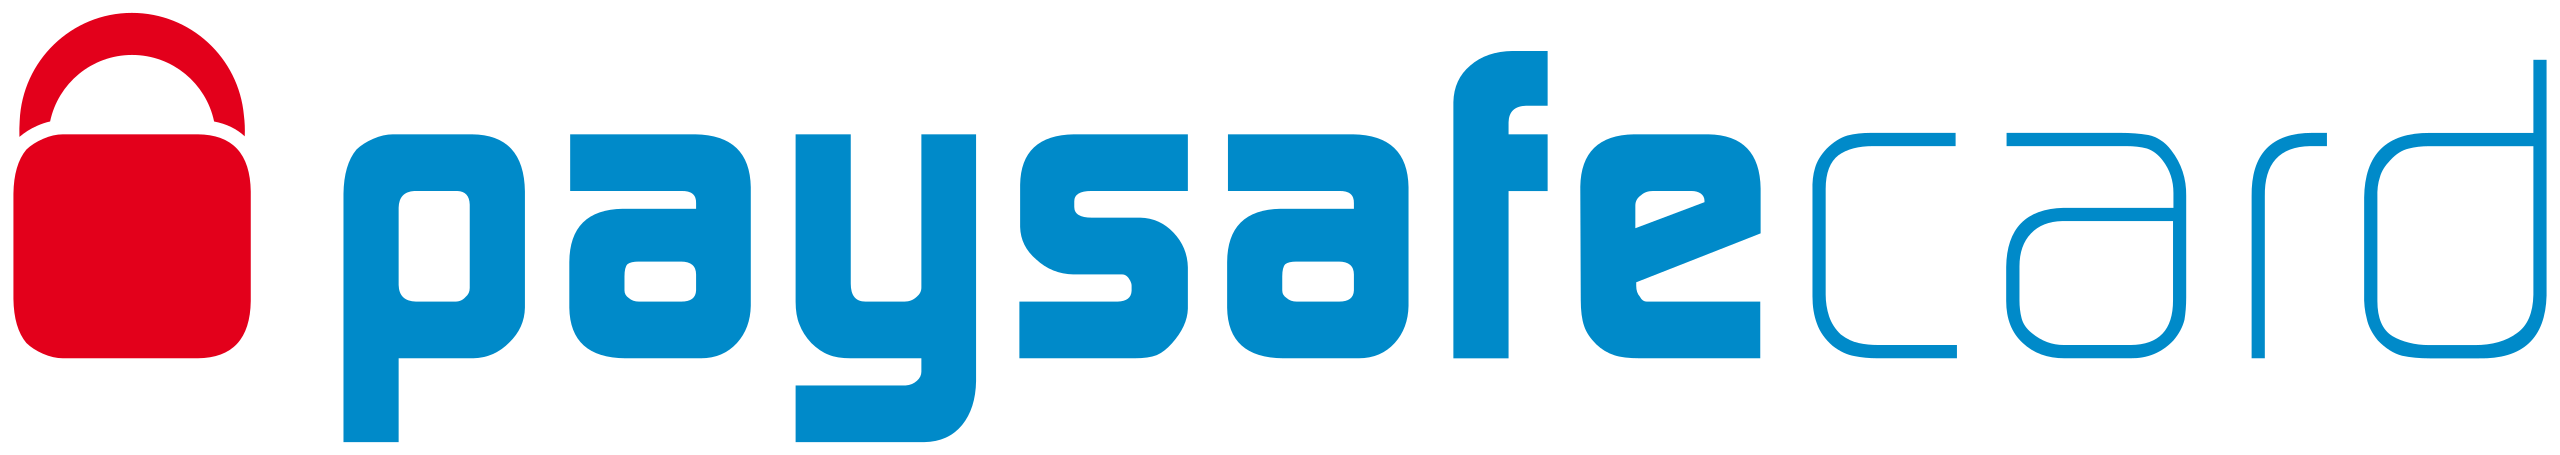 logo paysafecard.